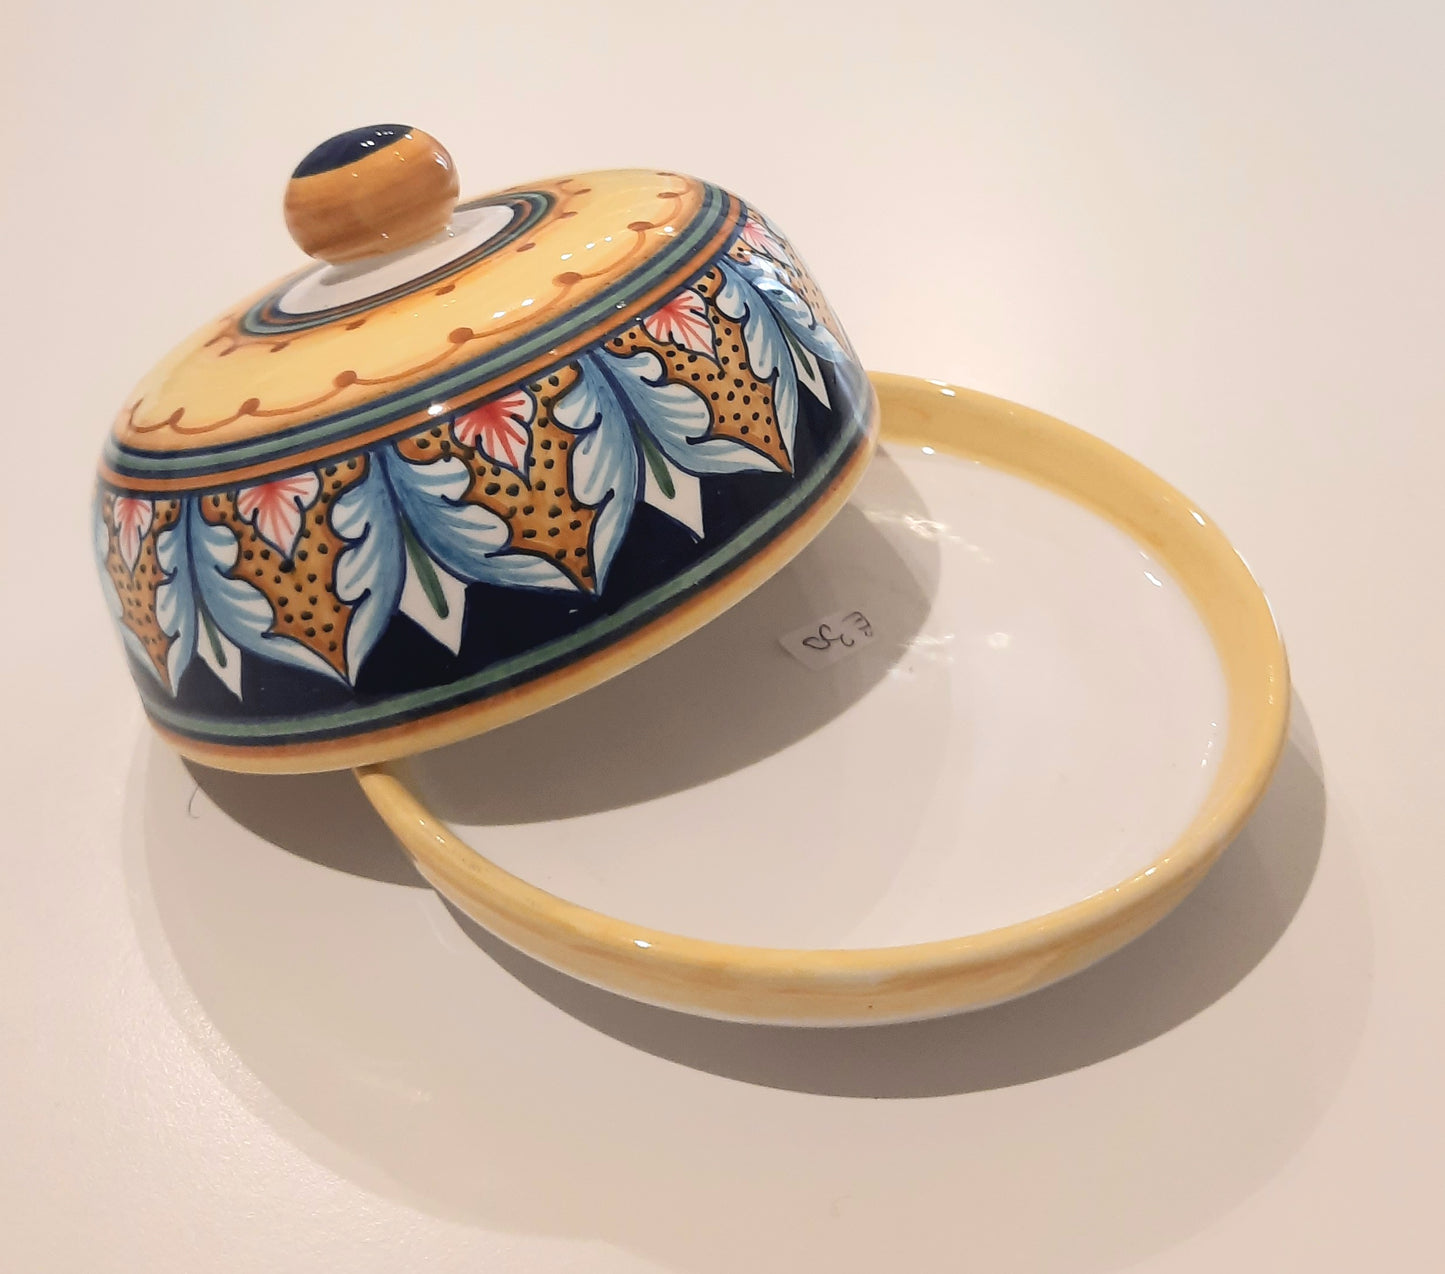 Burriera in ceramica dipinta a mano rotonda. Ideale per colorare le vostre tavole imbandite.